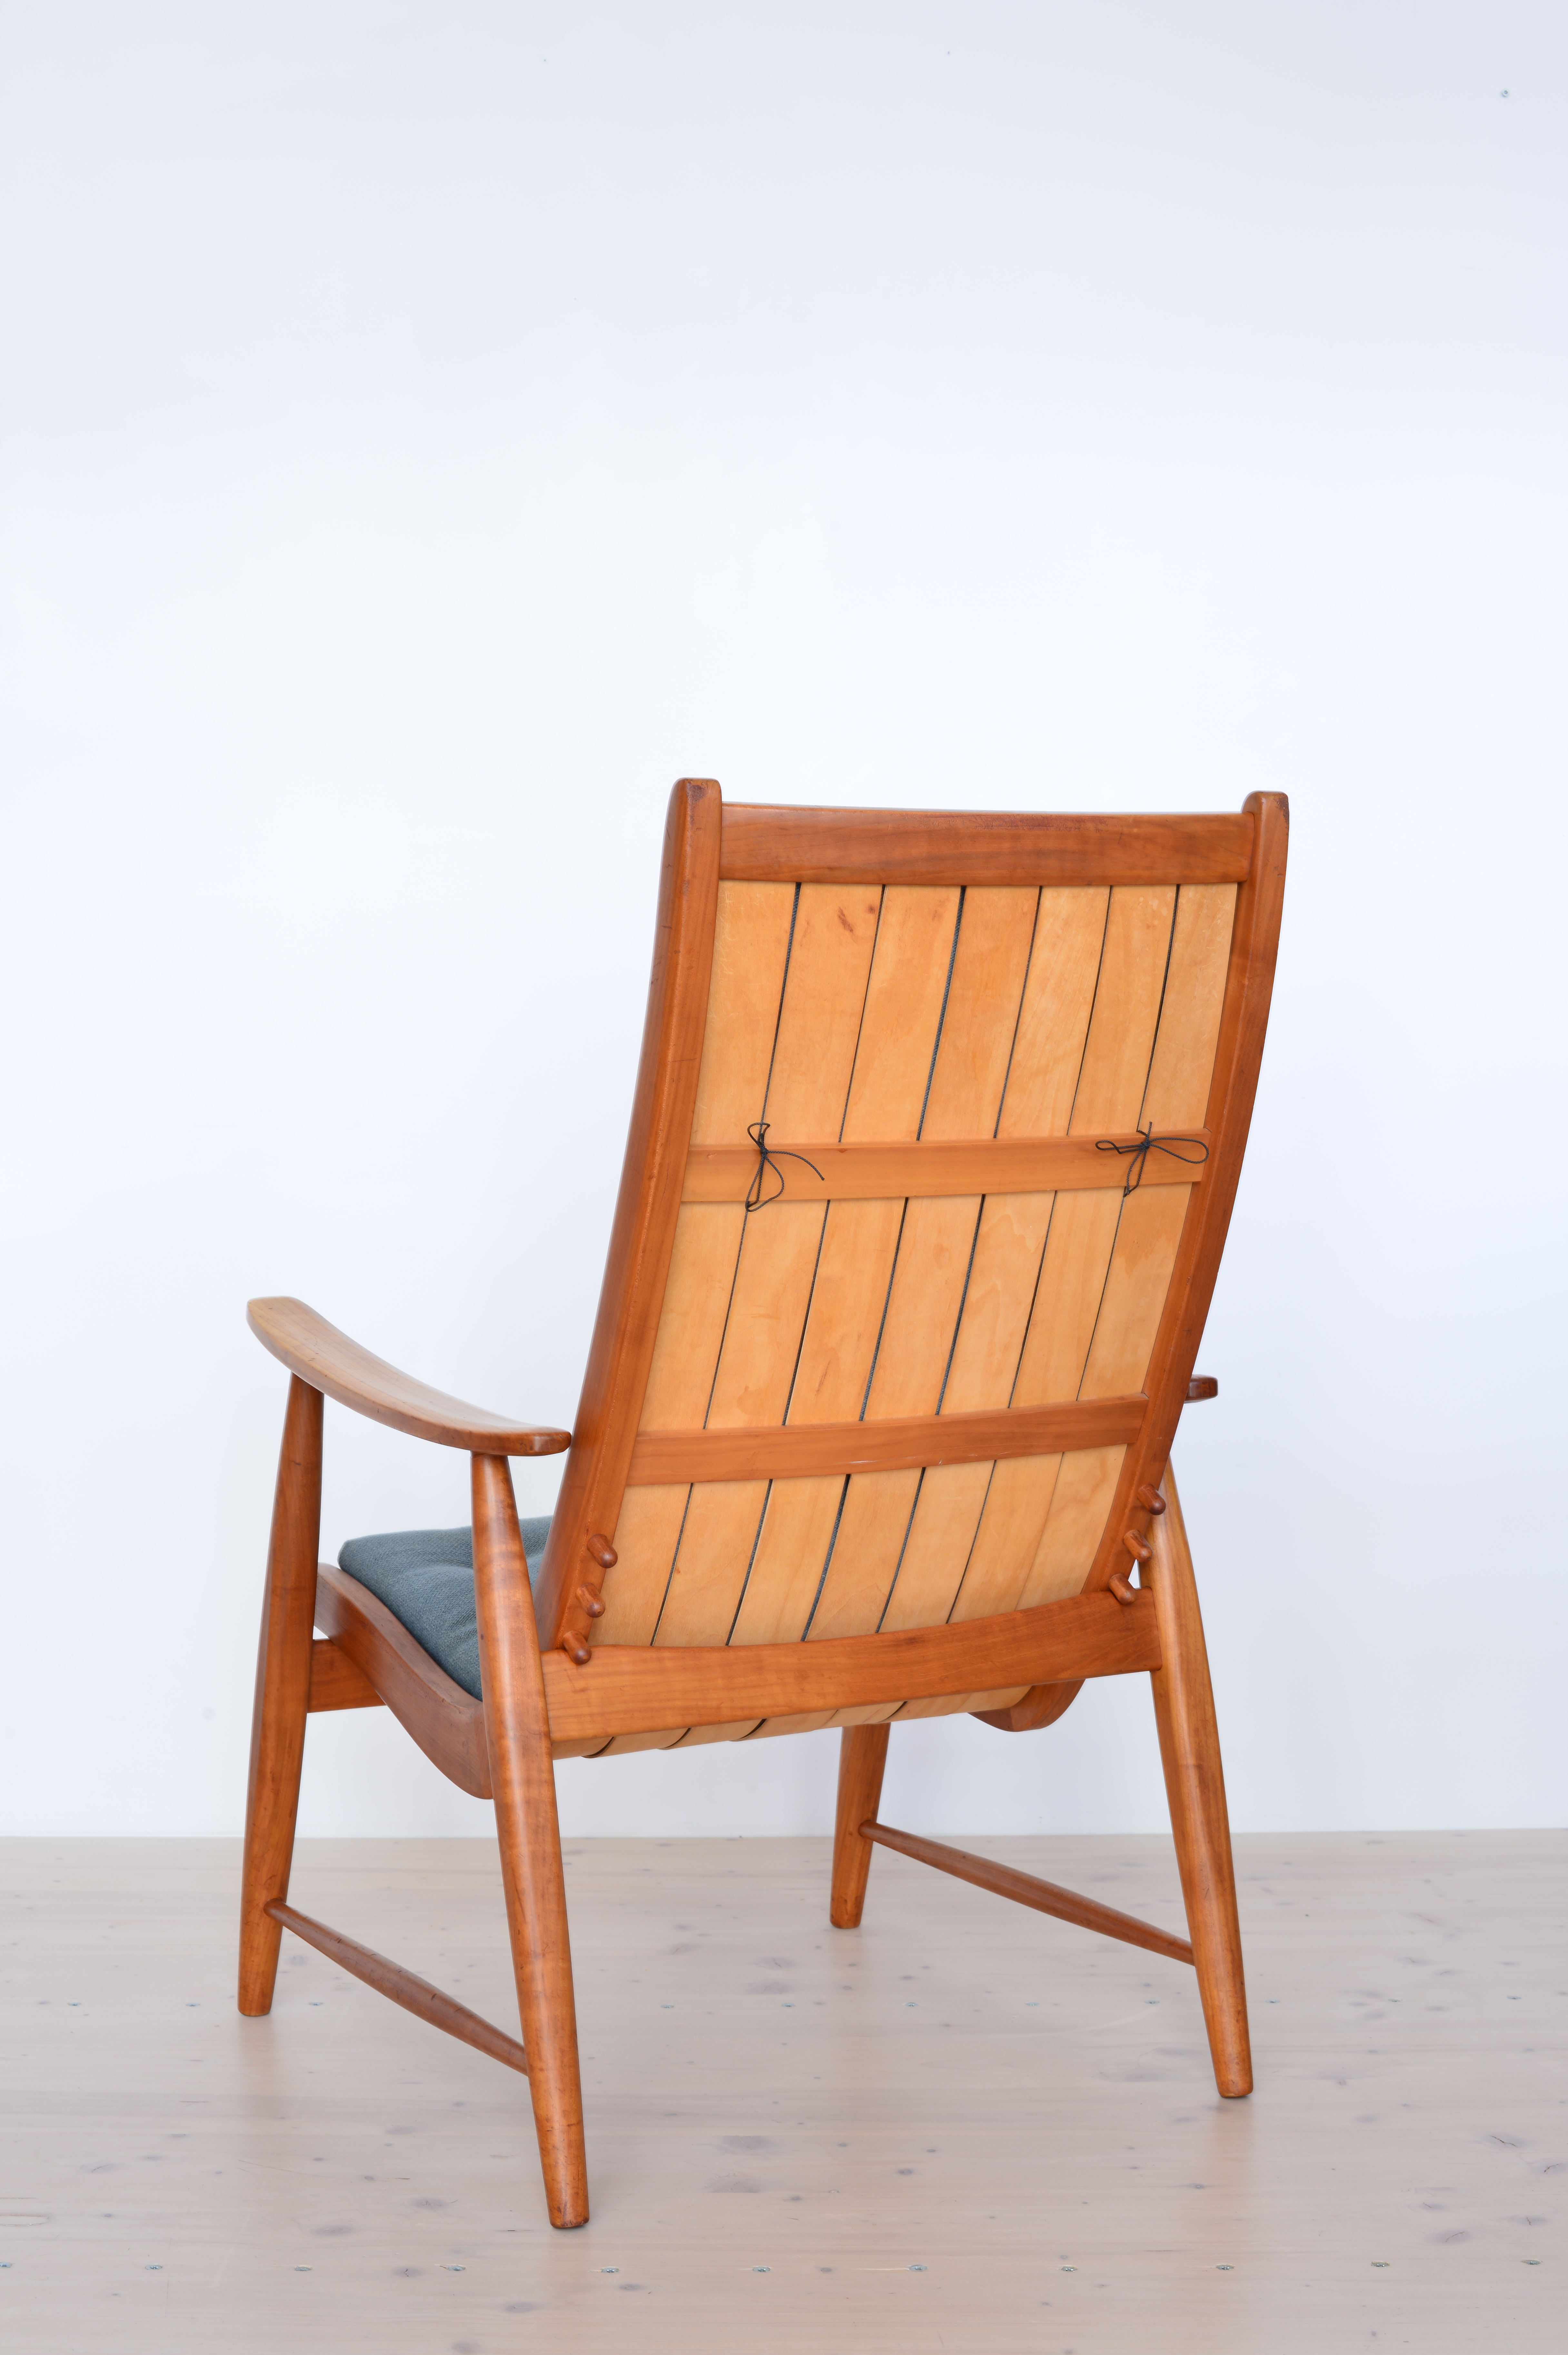 xJacob Muller Ronco Chair Original available at heyday möbel, Grubenstrasse 19, 8045 Zurich, Switzerland